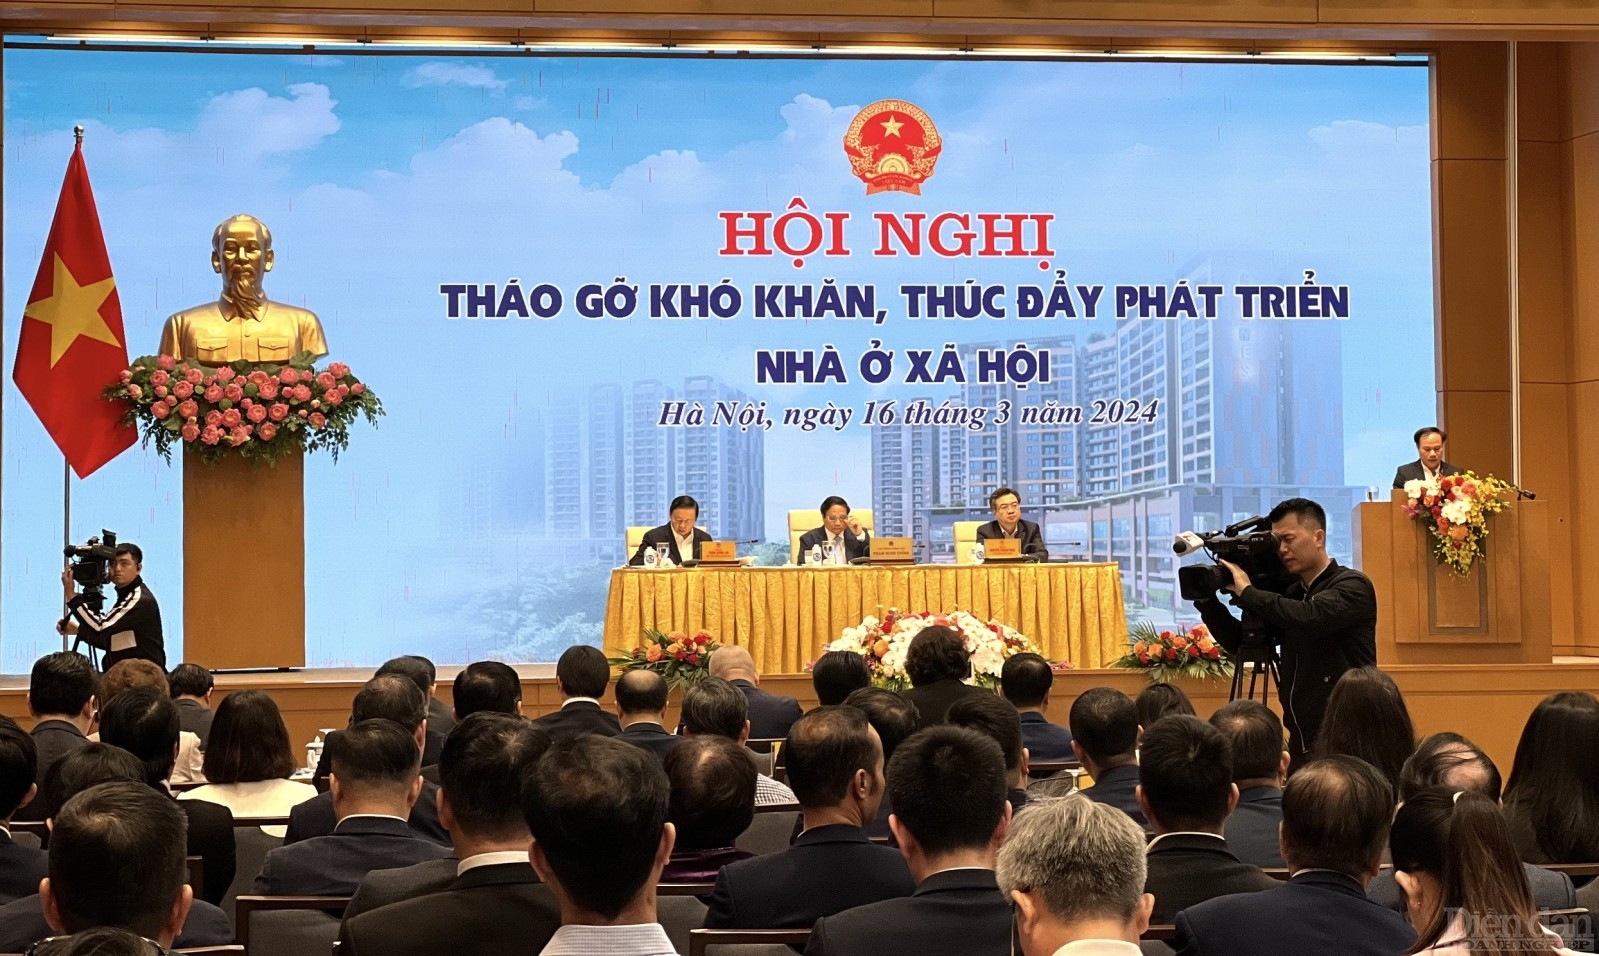 Hội nghị trực tuyến của Chính phủ với các địa phương về tháo gỡ khó khăn, thúc đẩy triển khai các dự án nhà ở xã hội dưới sự chủ trì của Thủ tướng Phạm Minh Chính vào sáng 16/3. ẢNH: VI ANH